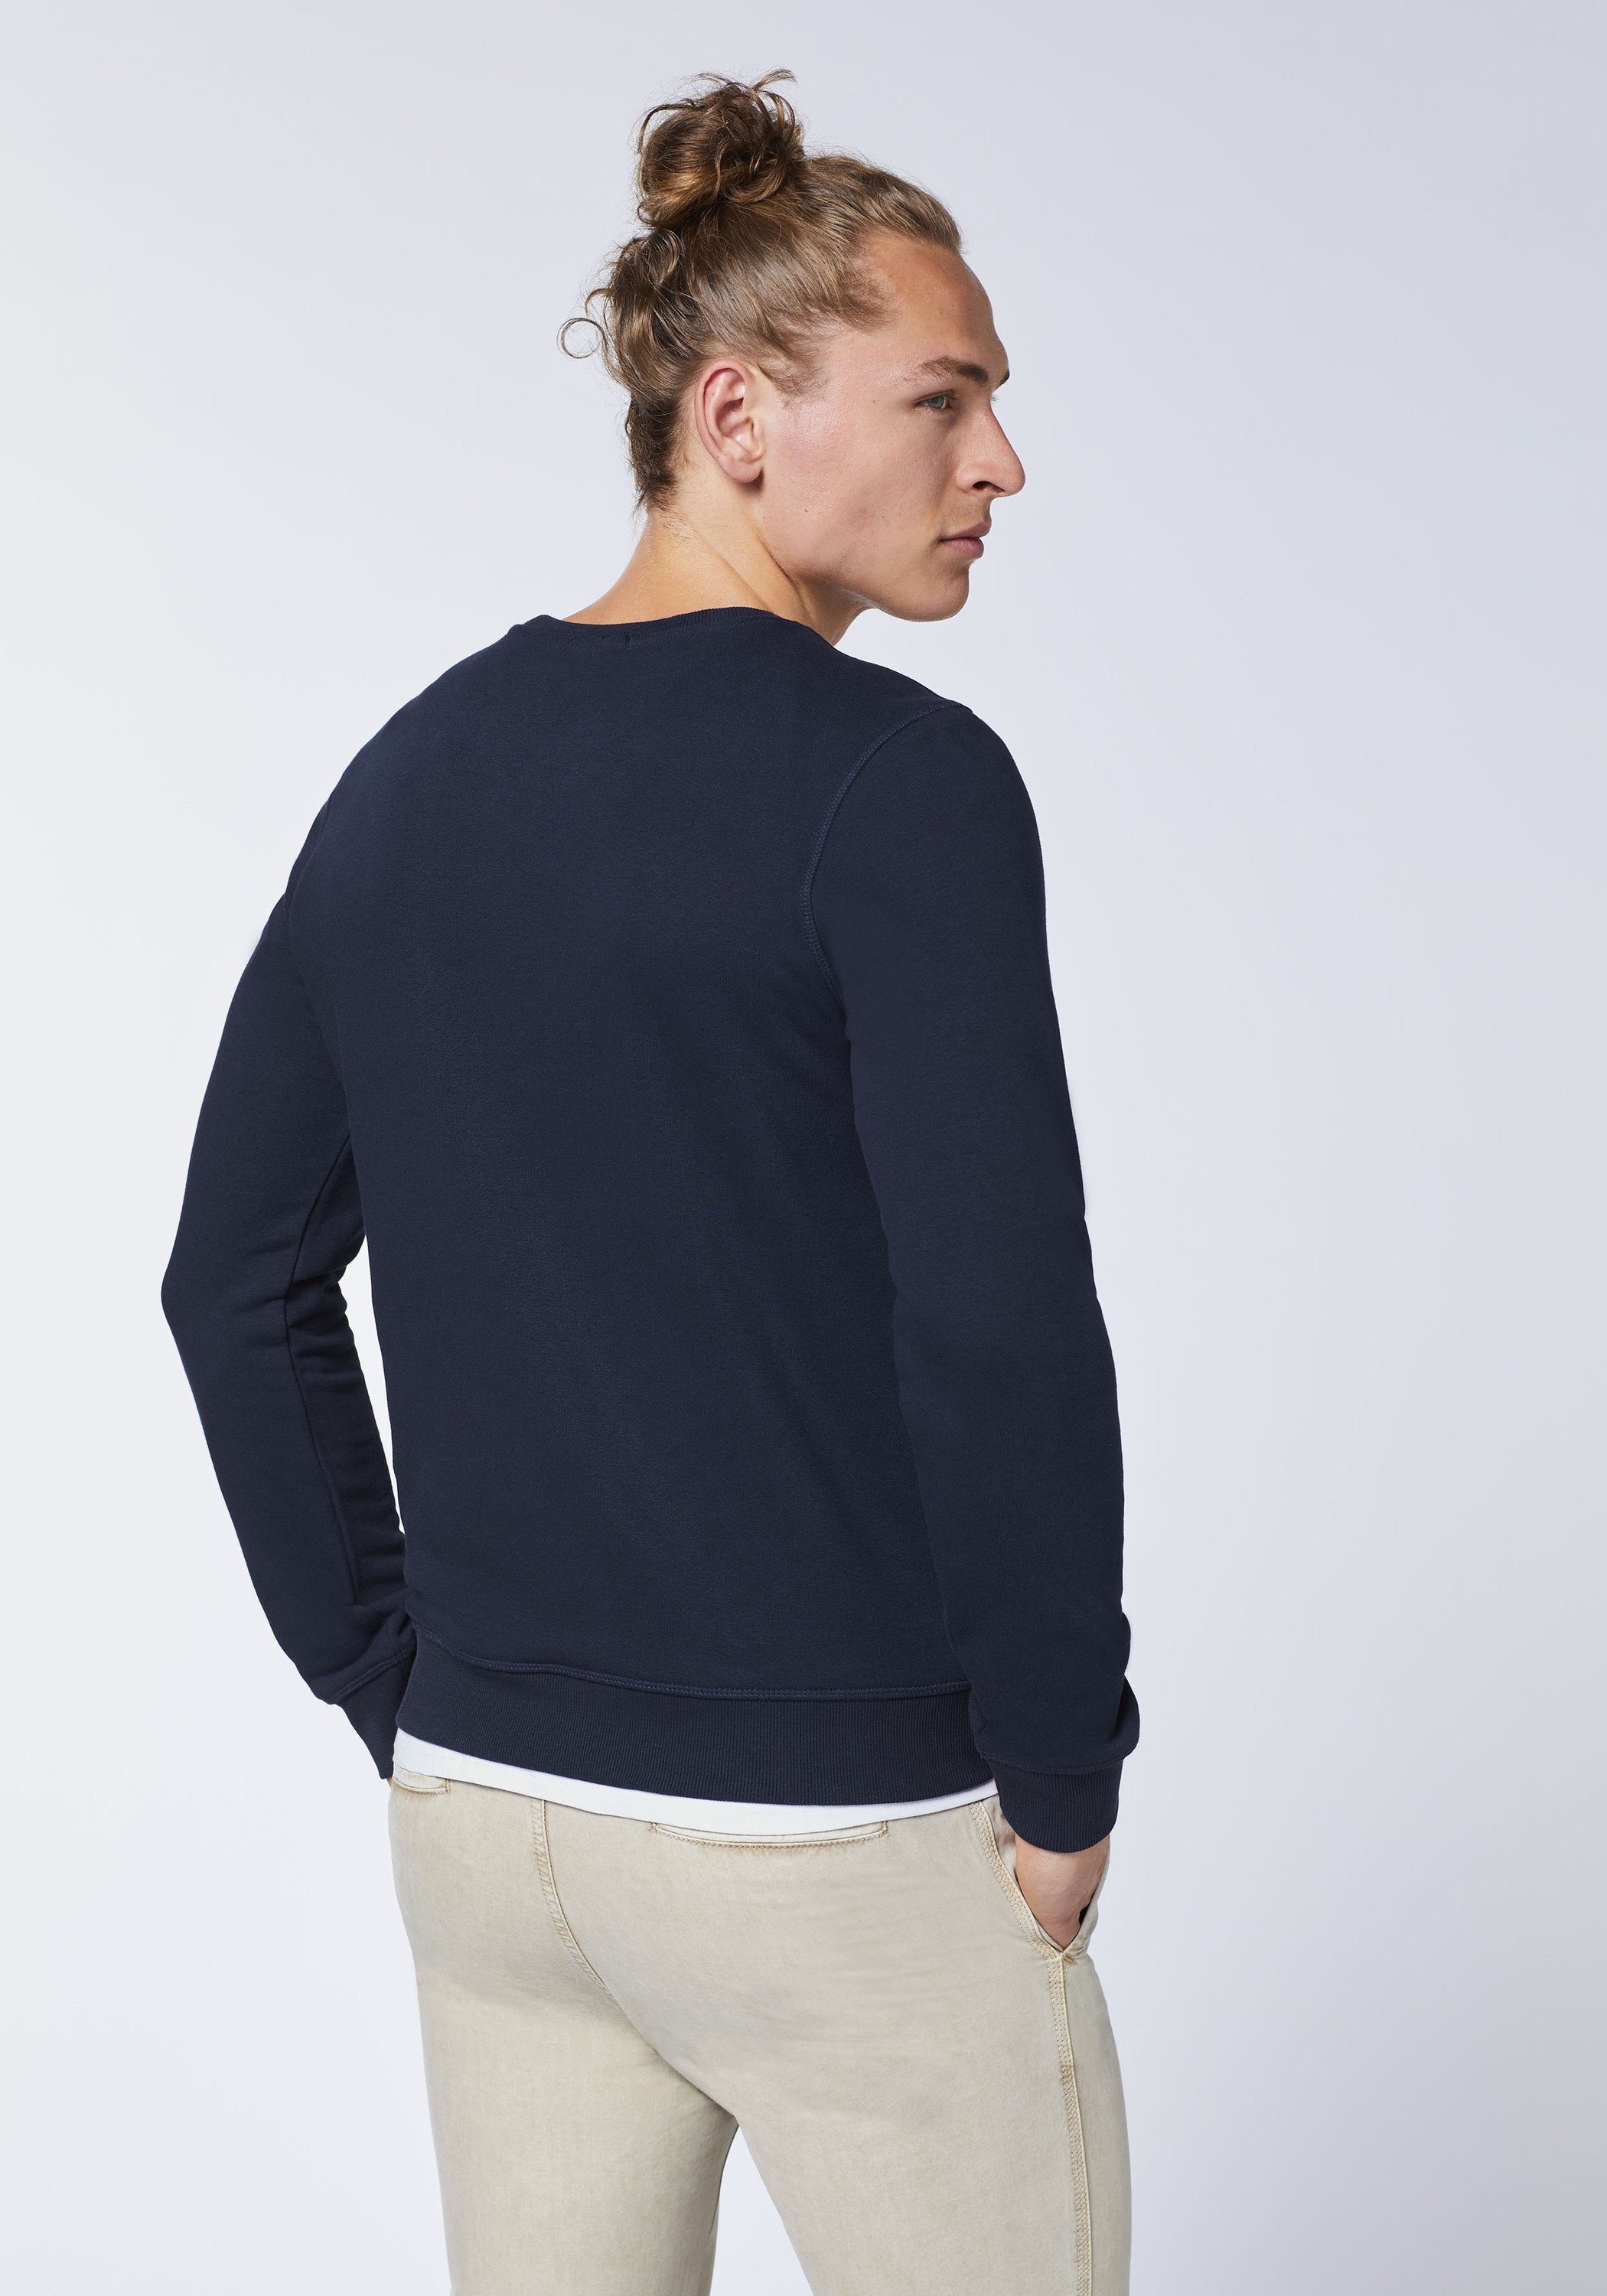 Sweatshirt dunkel Label-Look Chiemsee Sweater blau 1 im